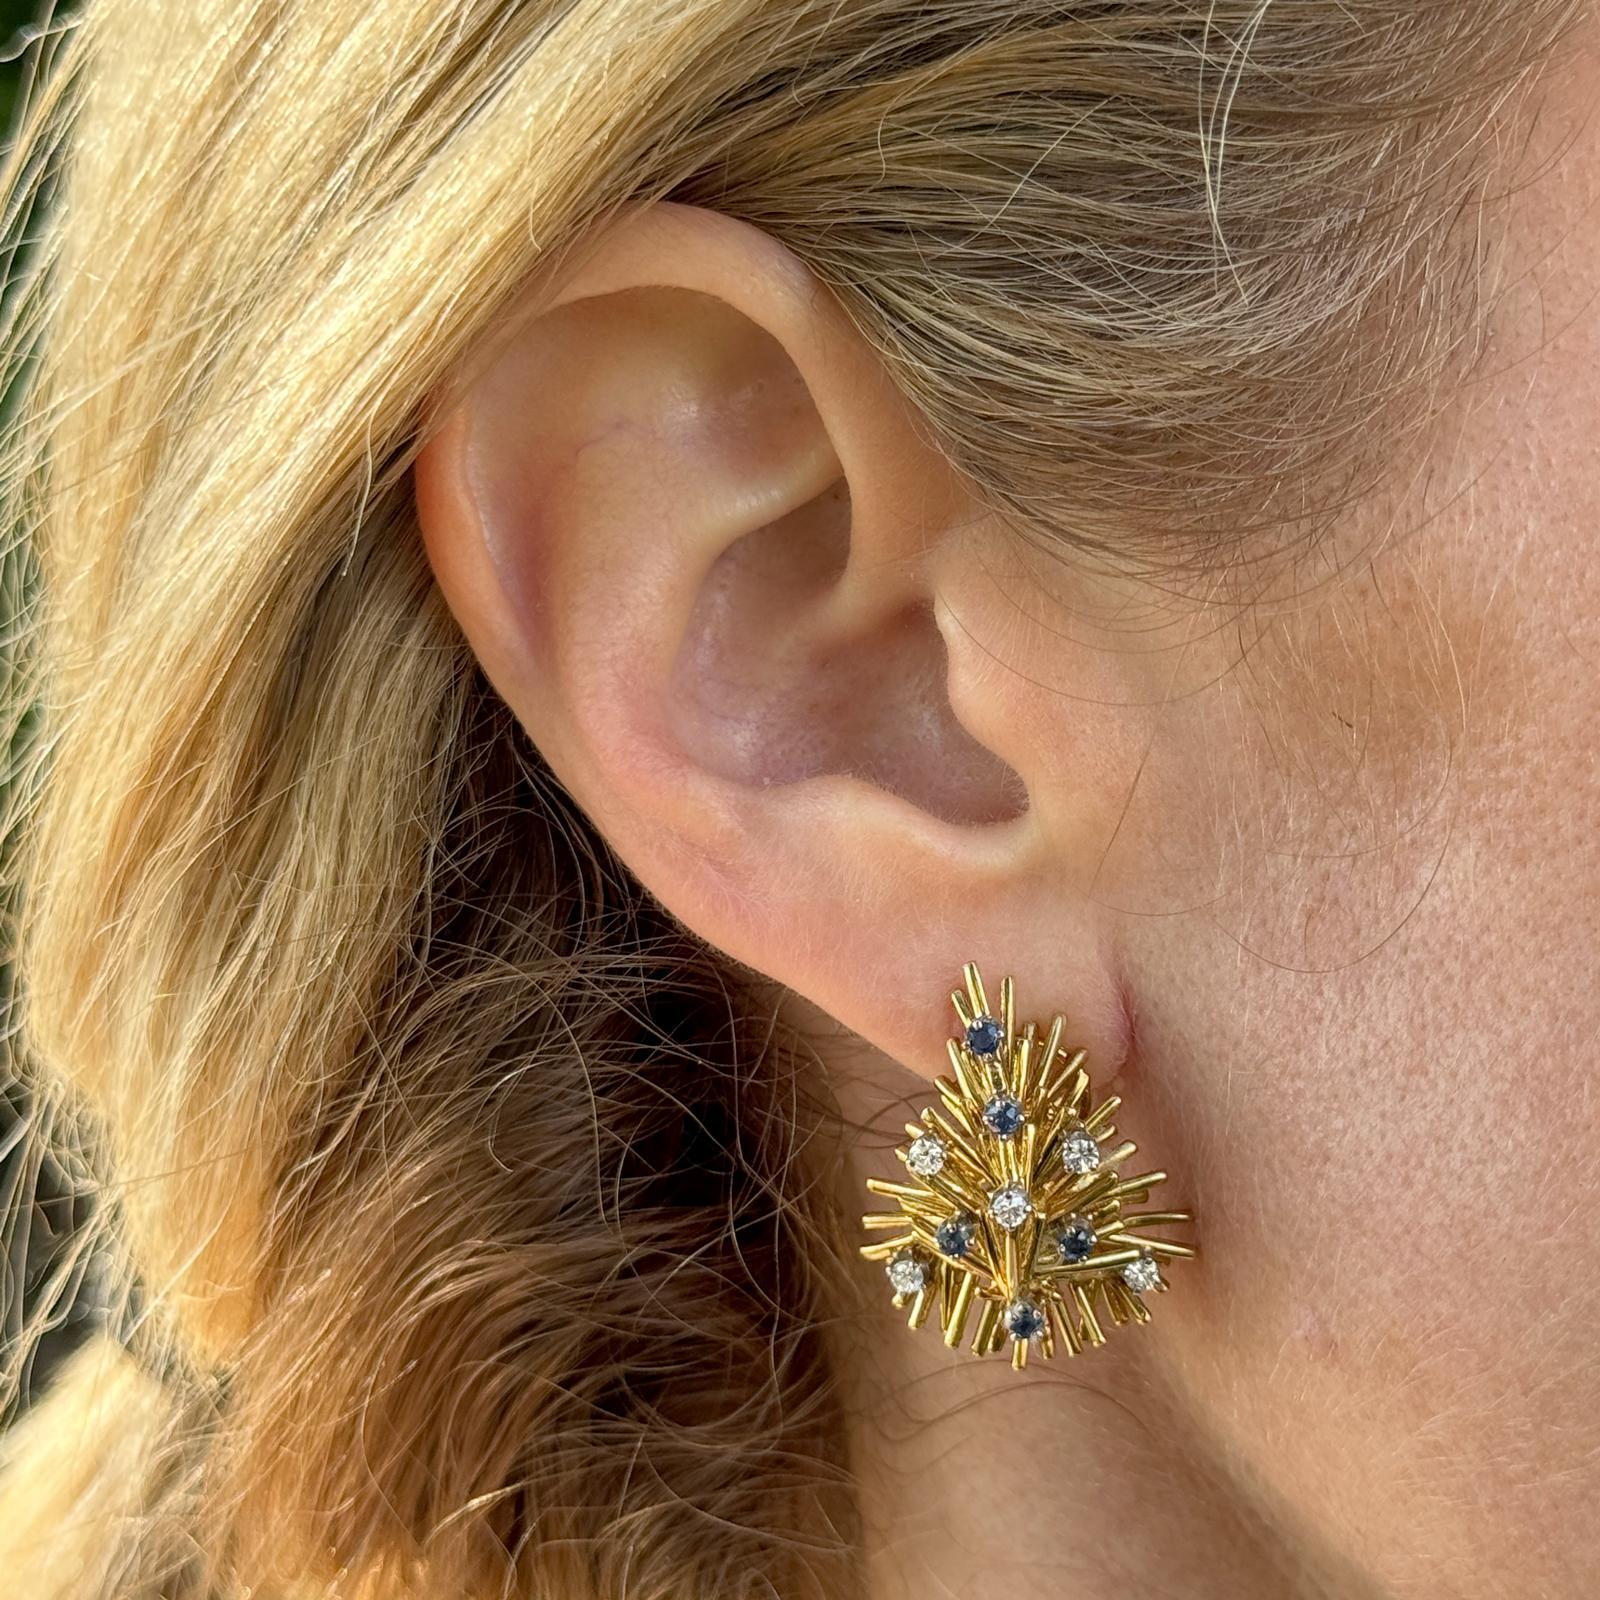 Les boucles d'oreilles en diamant et saphir présentent un design en spray, typique du style vintage des années 1960. Conçues en or jaune 18 carats, ces boucles d'oreilles présentent une monture métallique riche et luxueuse qui s'harmonise